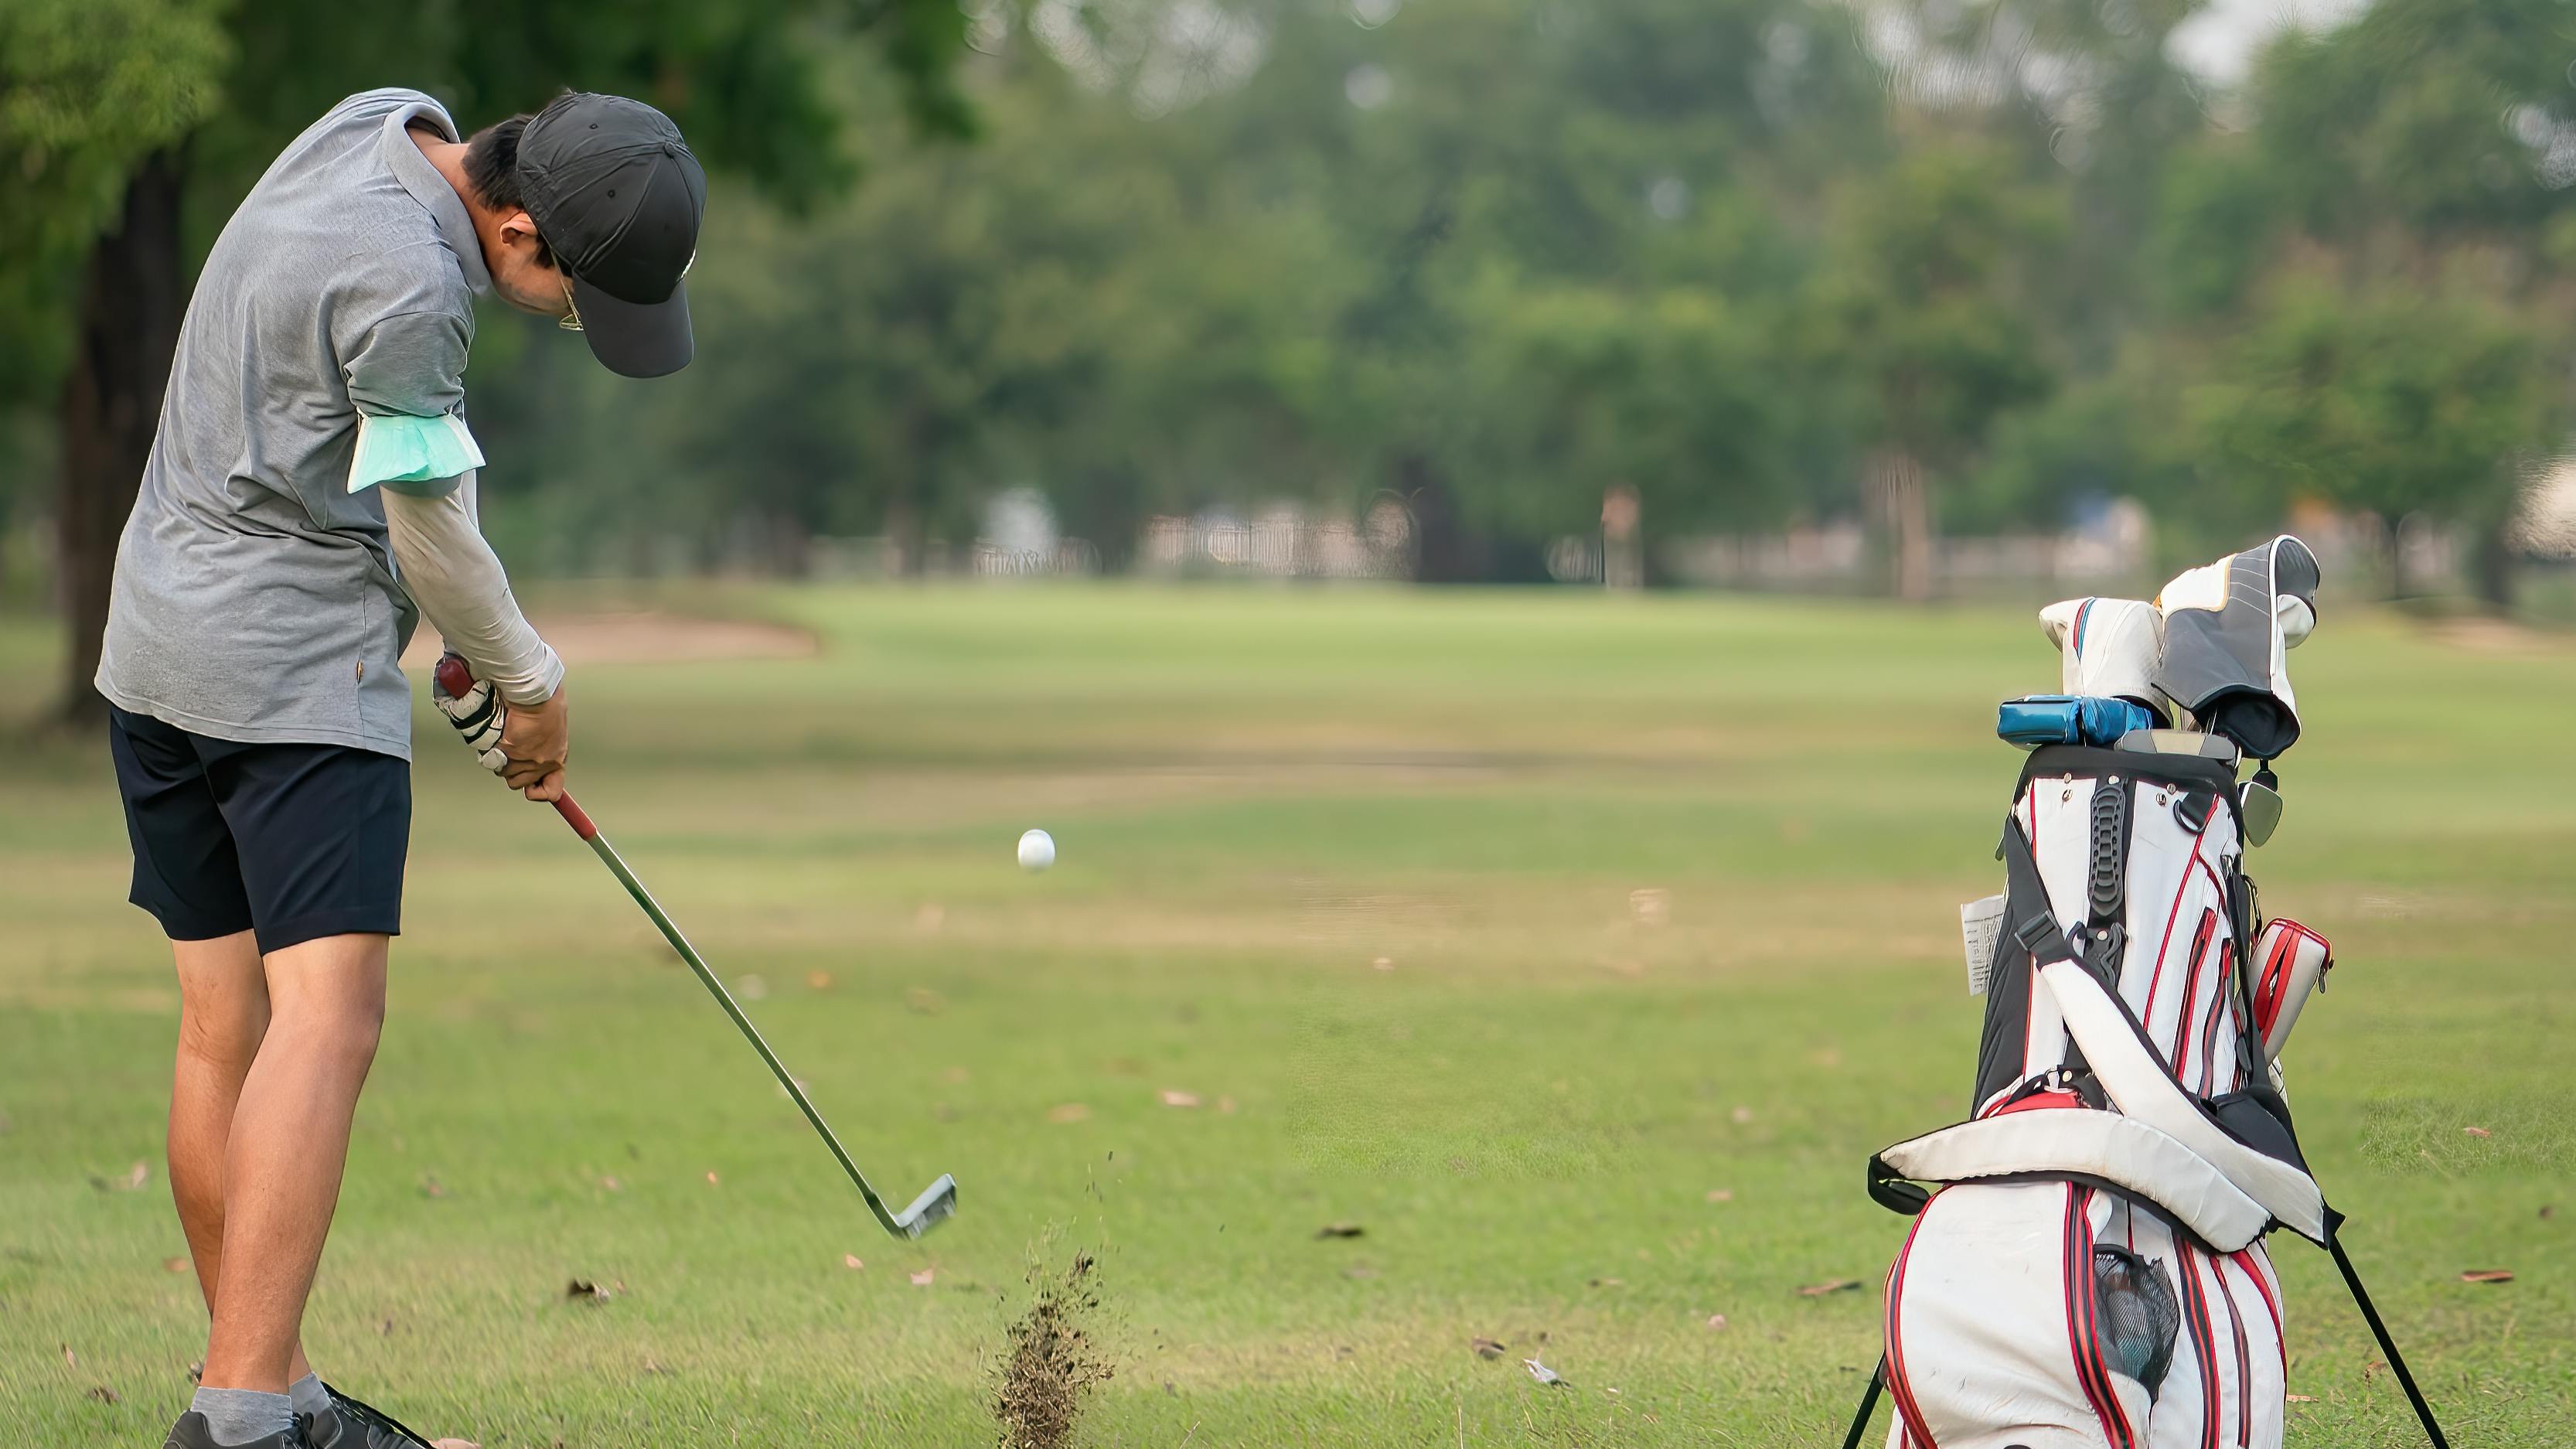 A golfer using an iron on a golf course. 